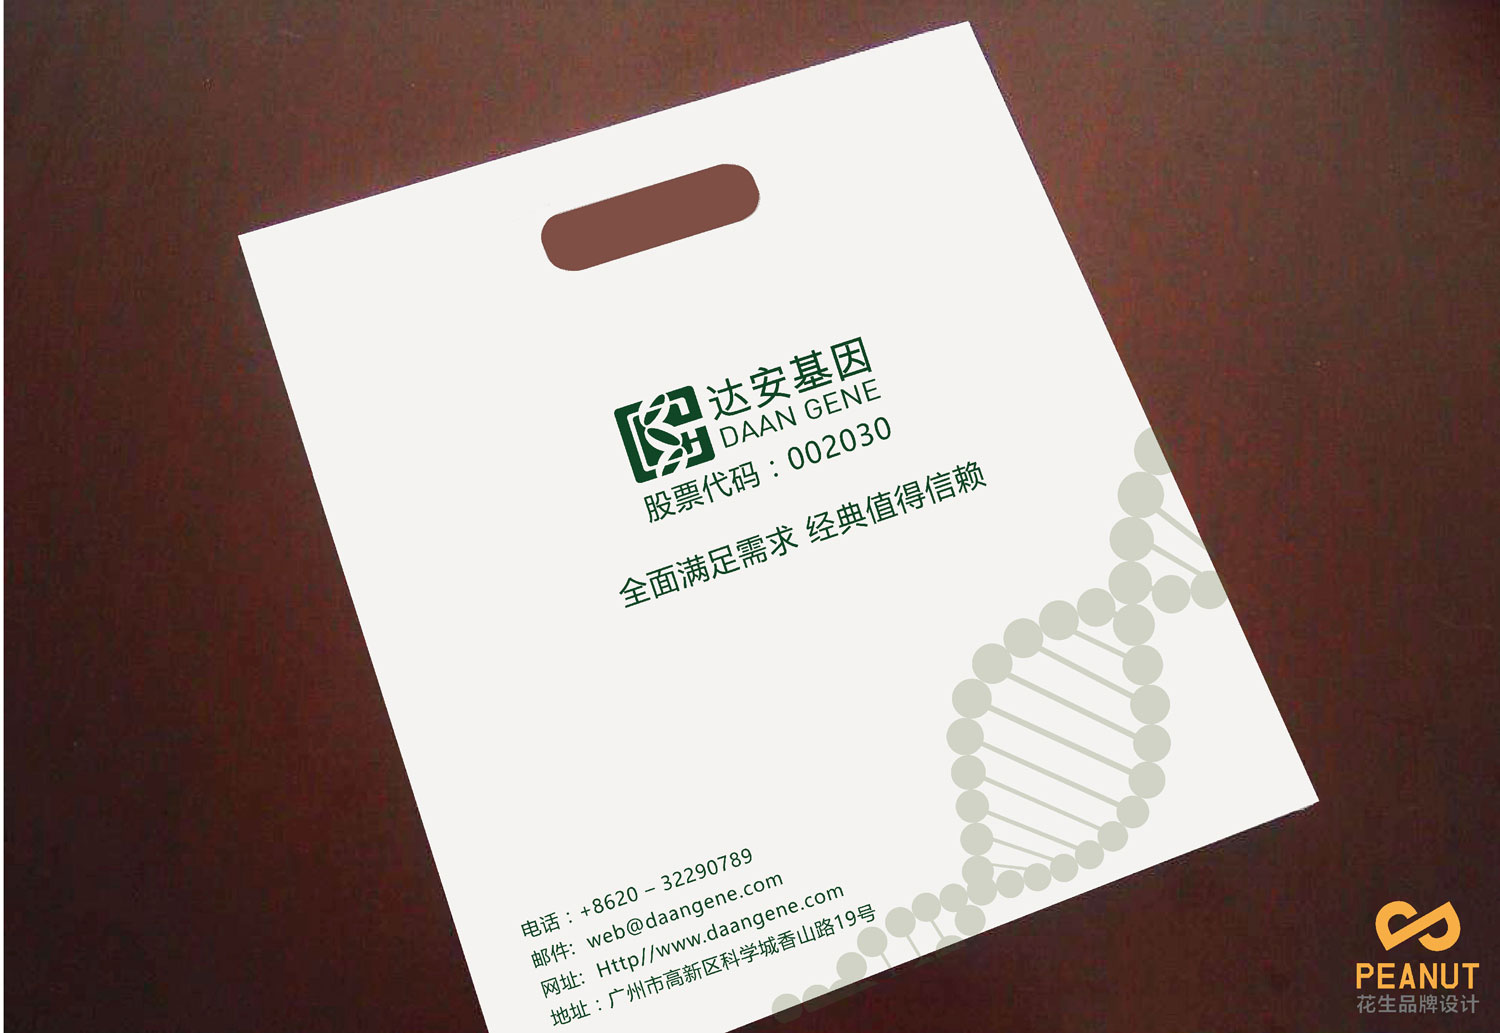 達安基因品牌設計，醫療品牌設計公司，廣州VI設計-環保袋設計